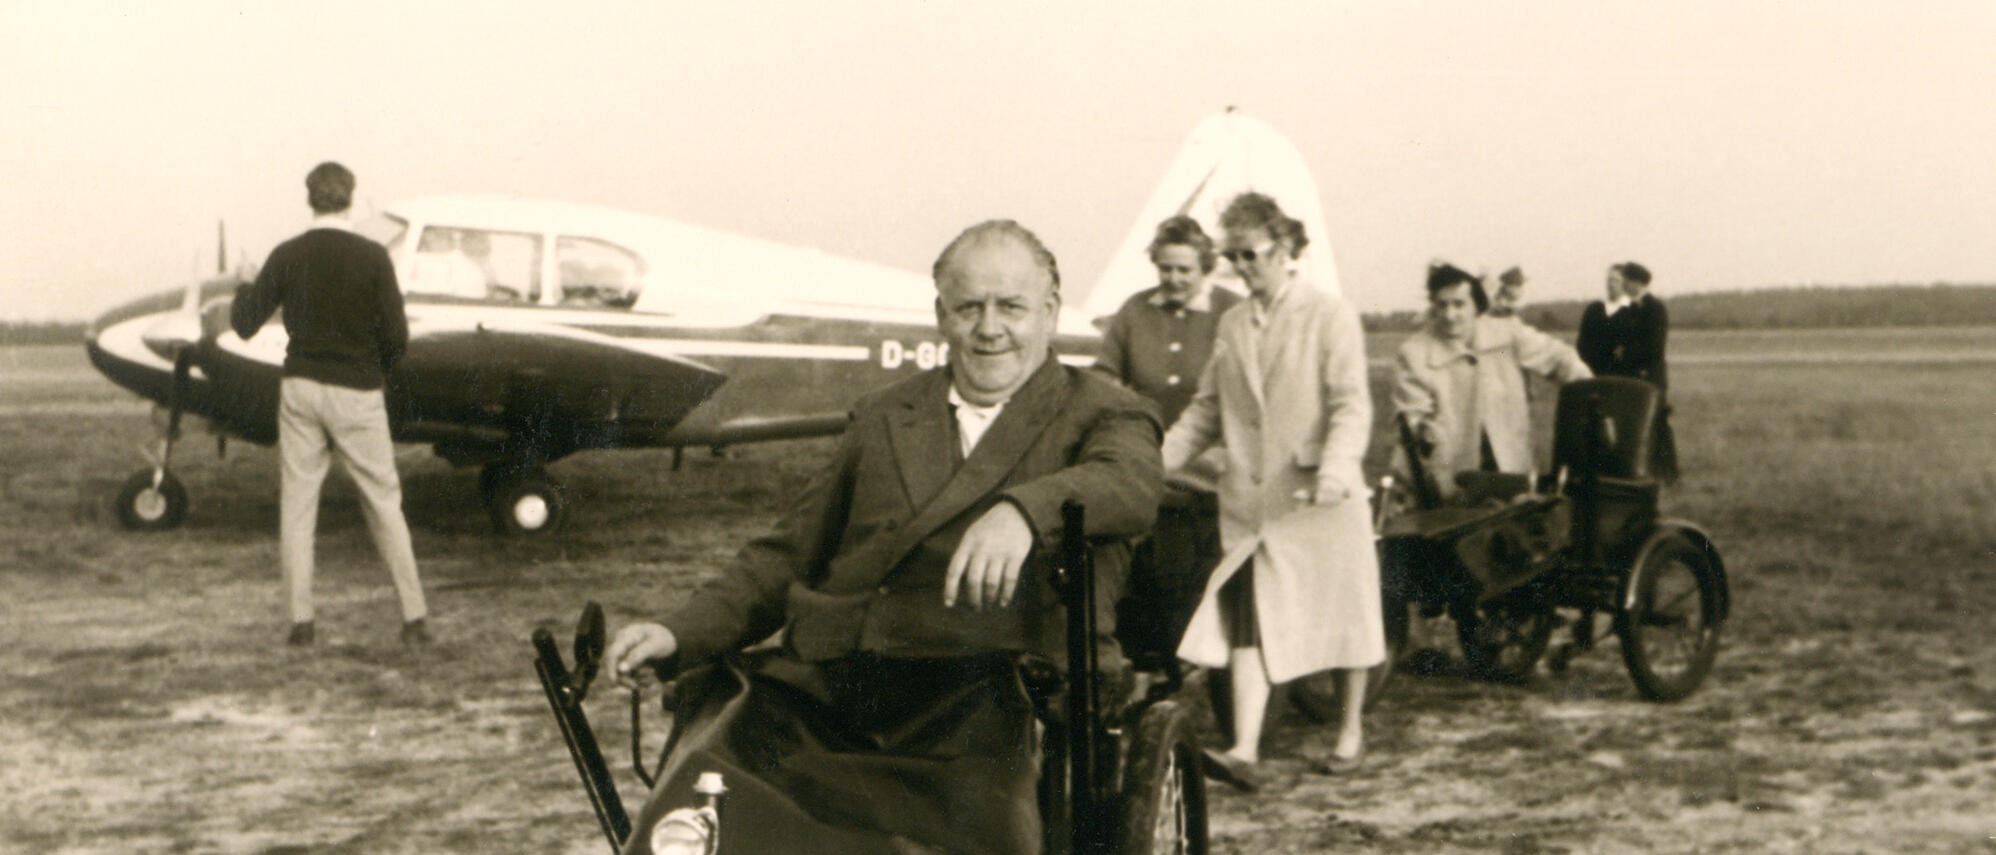 Bild eines Rollstuhlfahrers in den 60er Jahren - im Hintergrund ist ein kleines Flugzeug zu sehen.